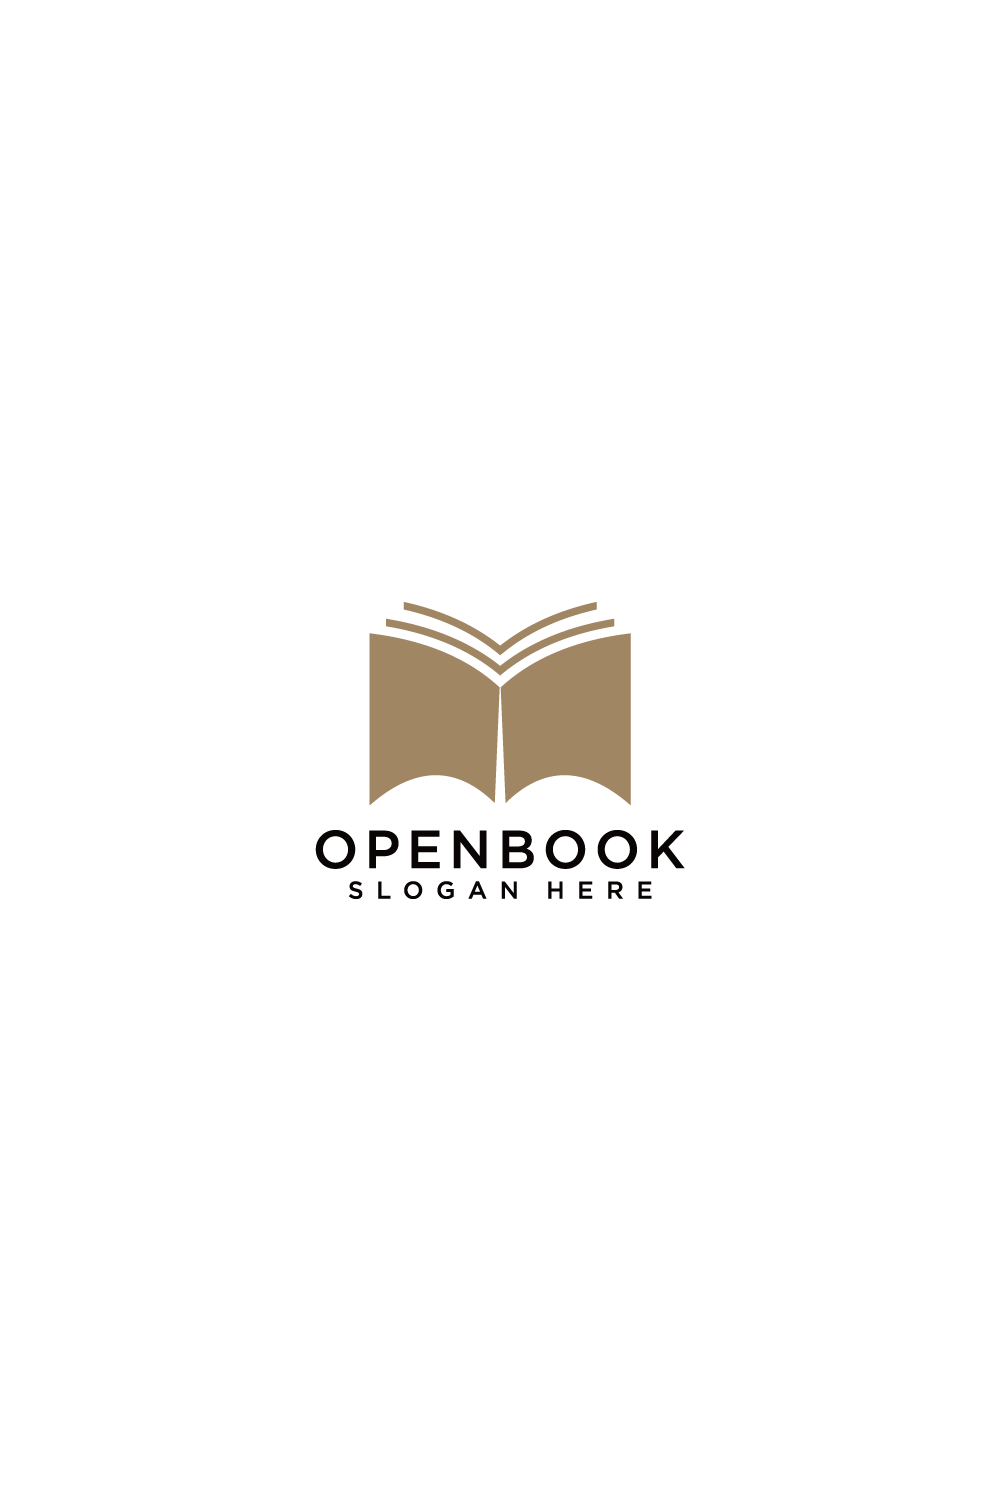 open book logo vector design template pinterest preview image.